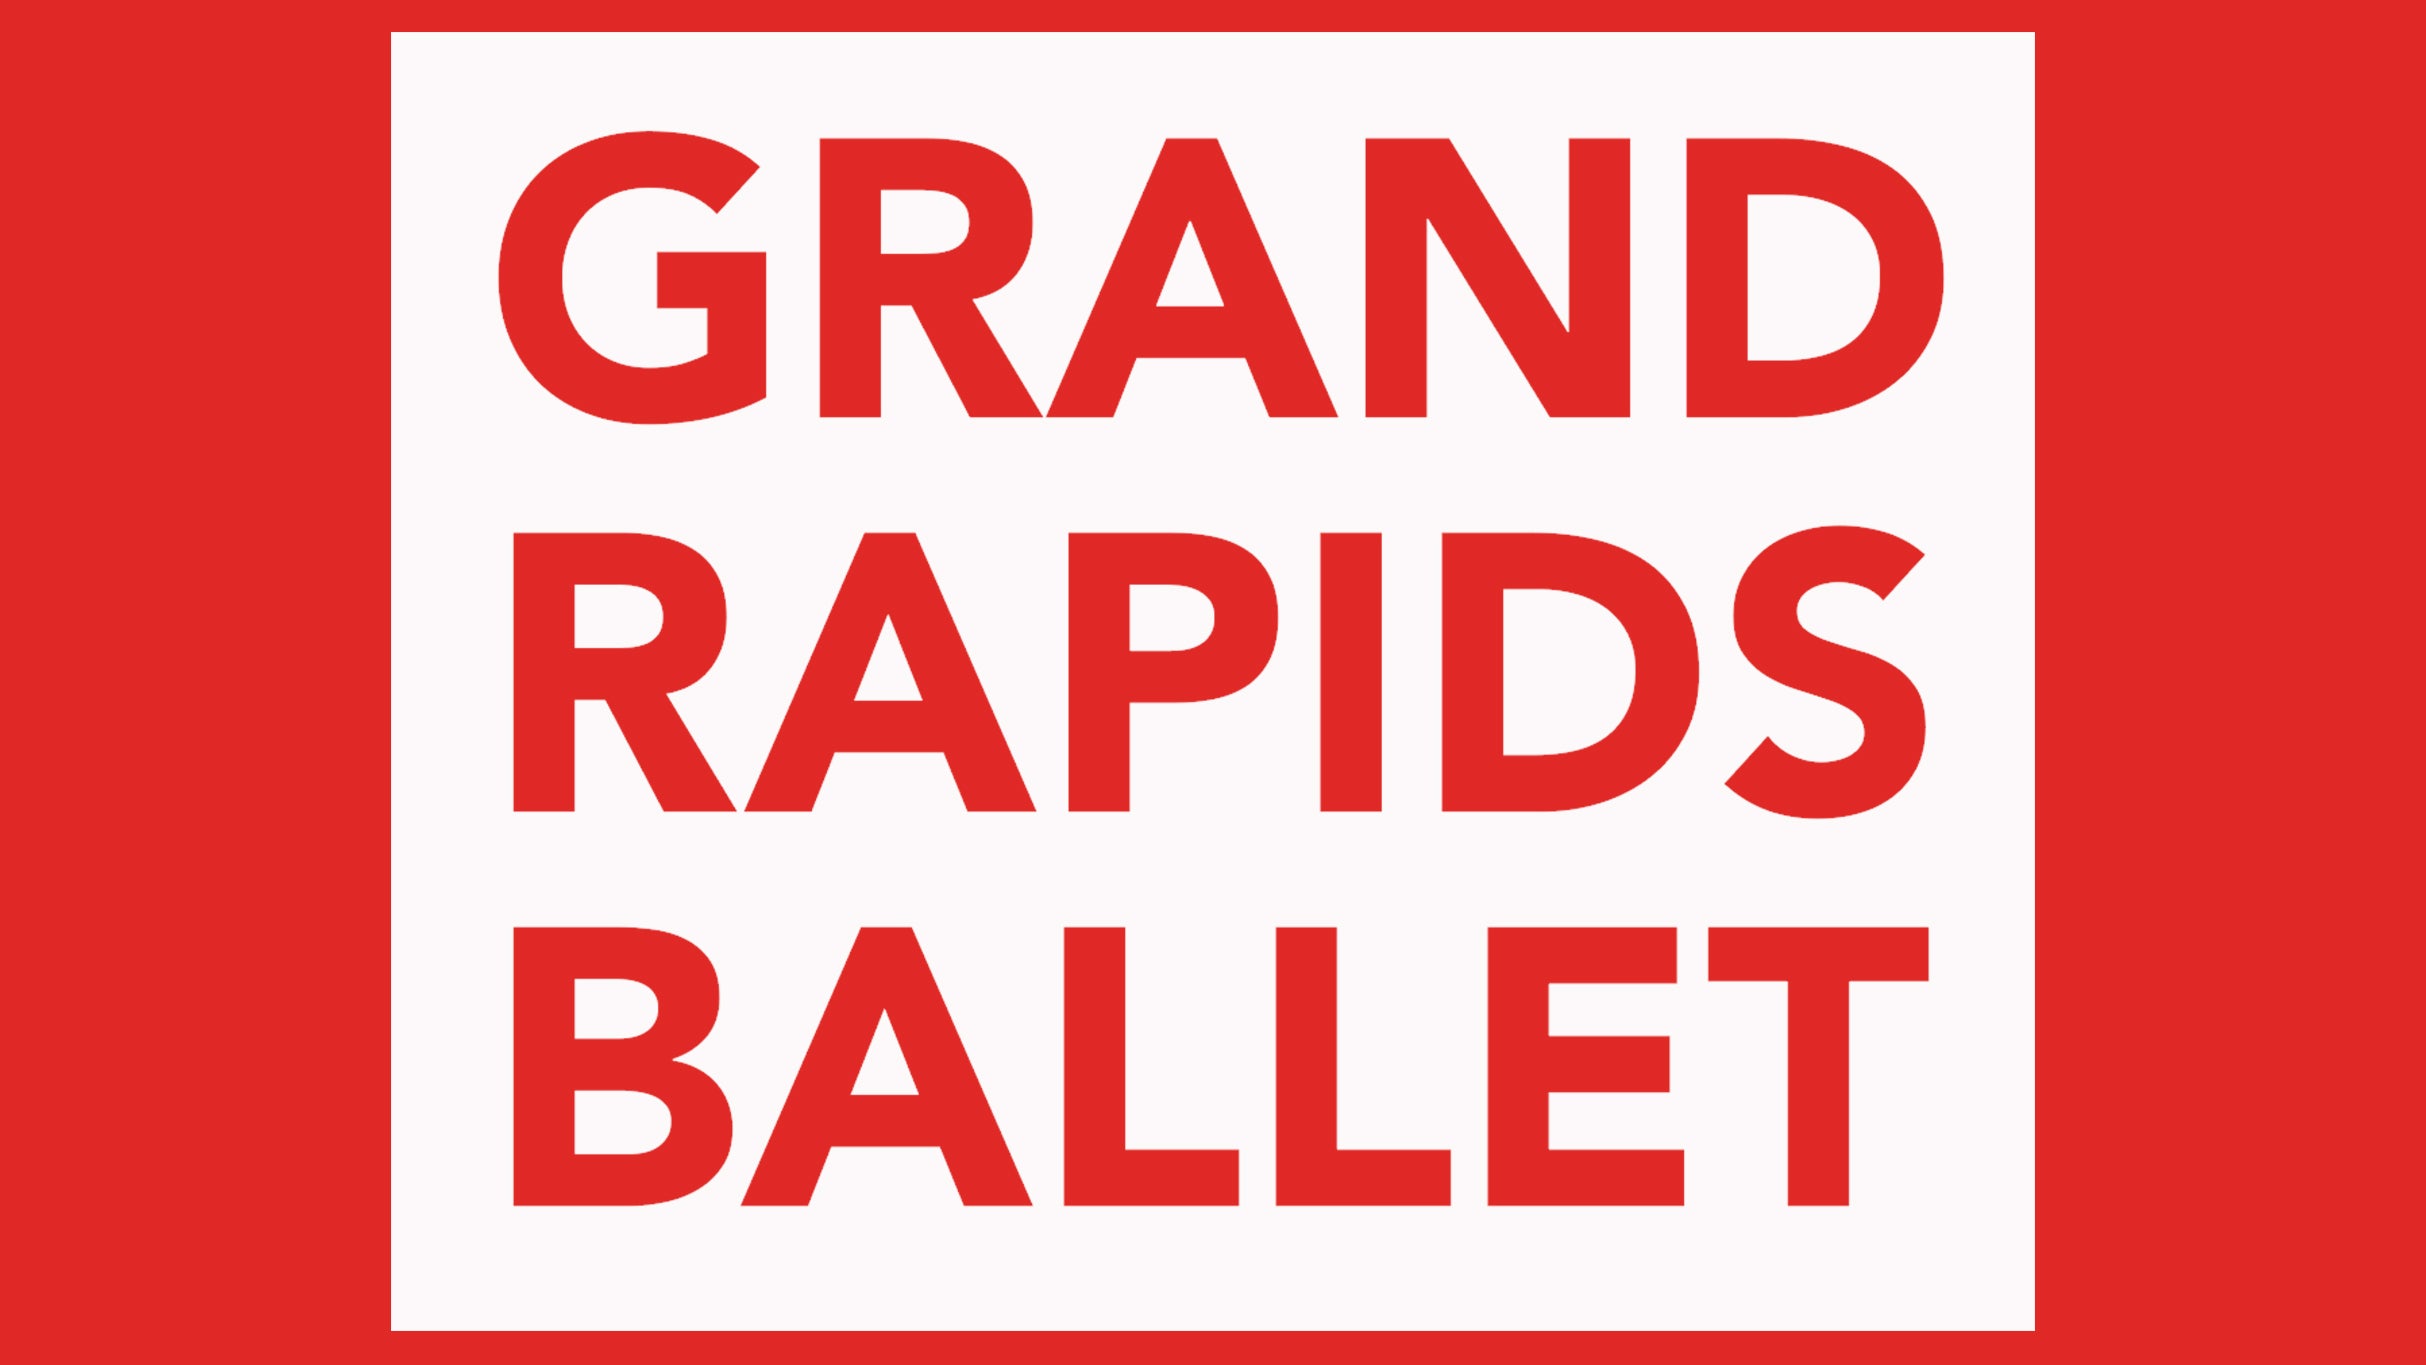 Grand Rapids Ballet: In The Upper Room